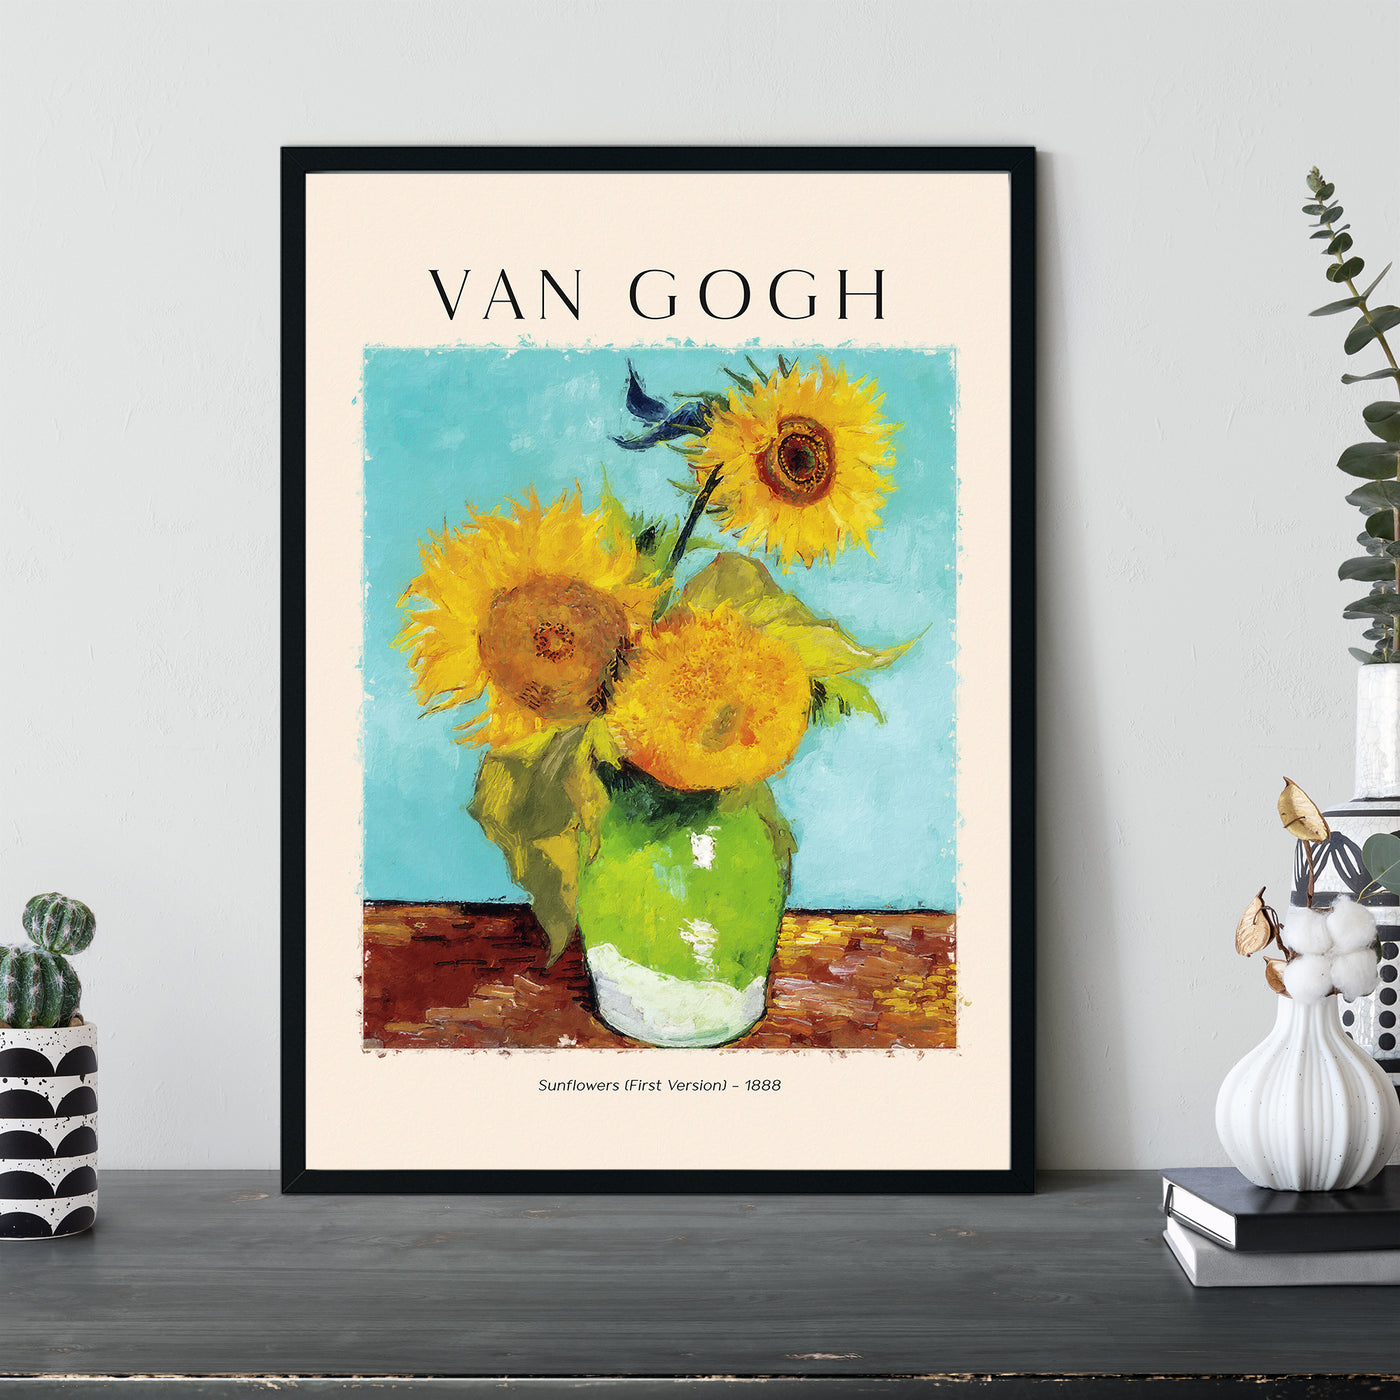 Van Gogh - Sunflowers (First Version) - 1888